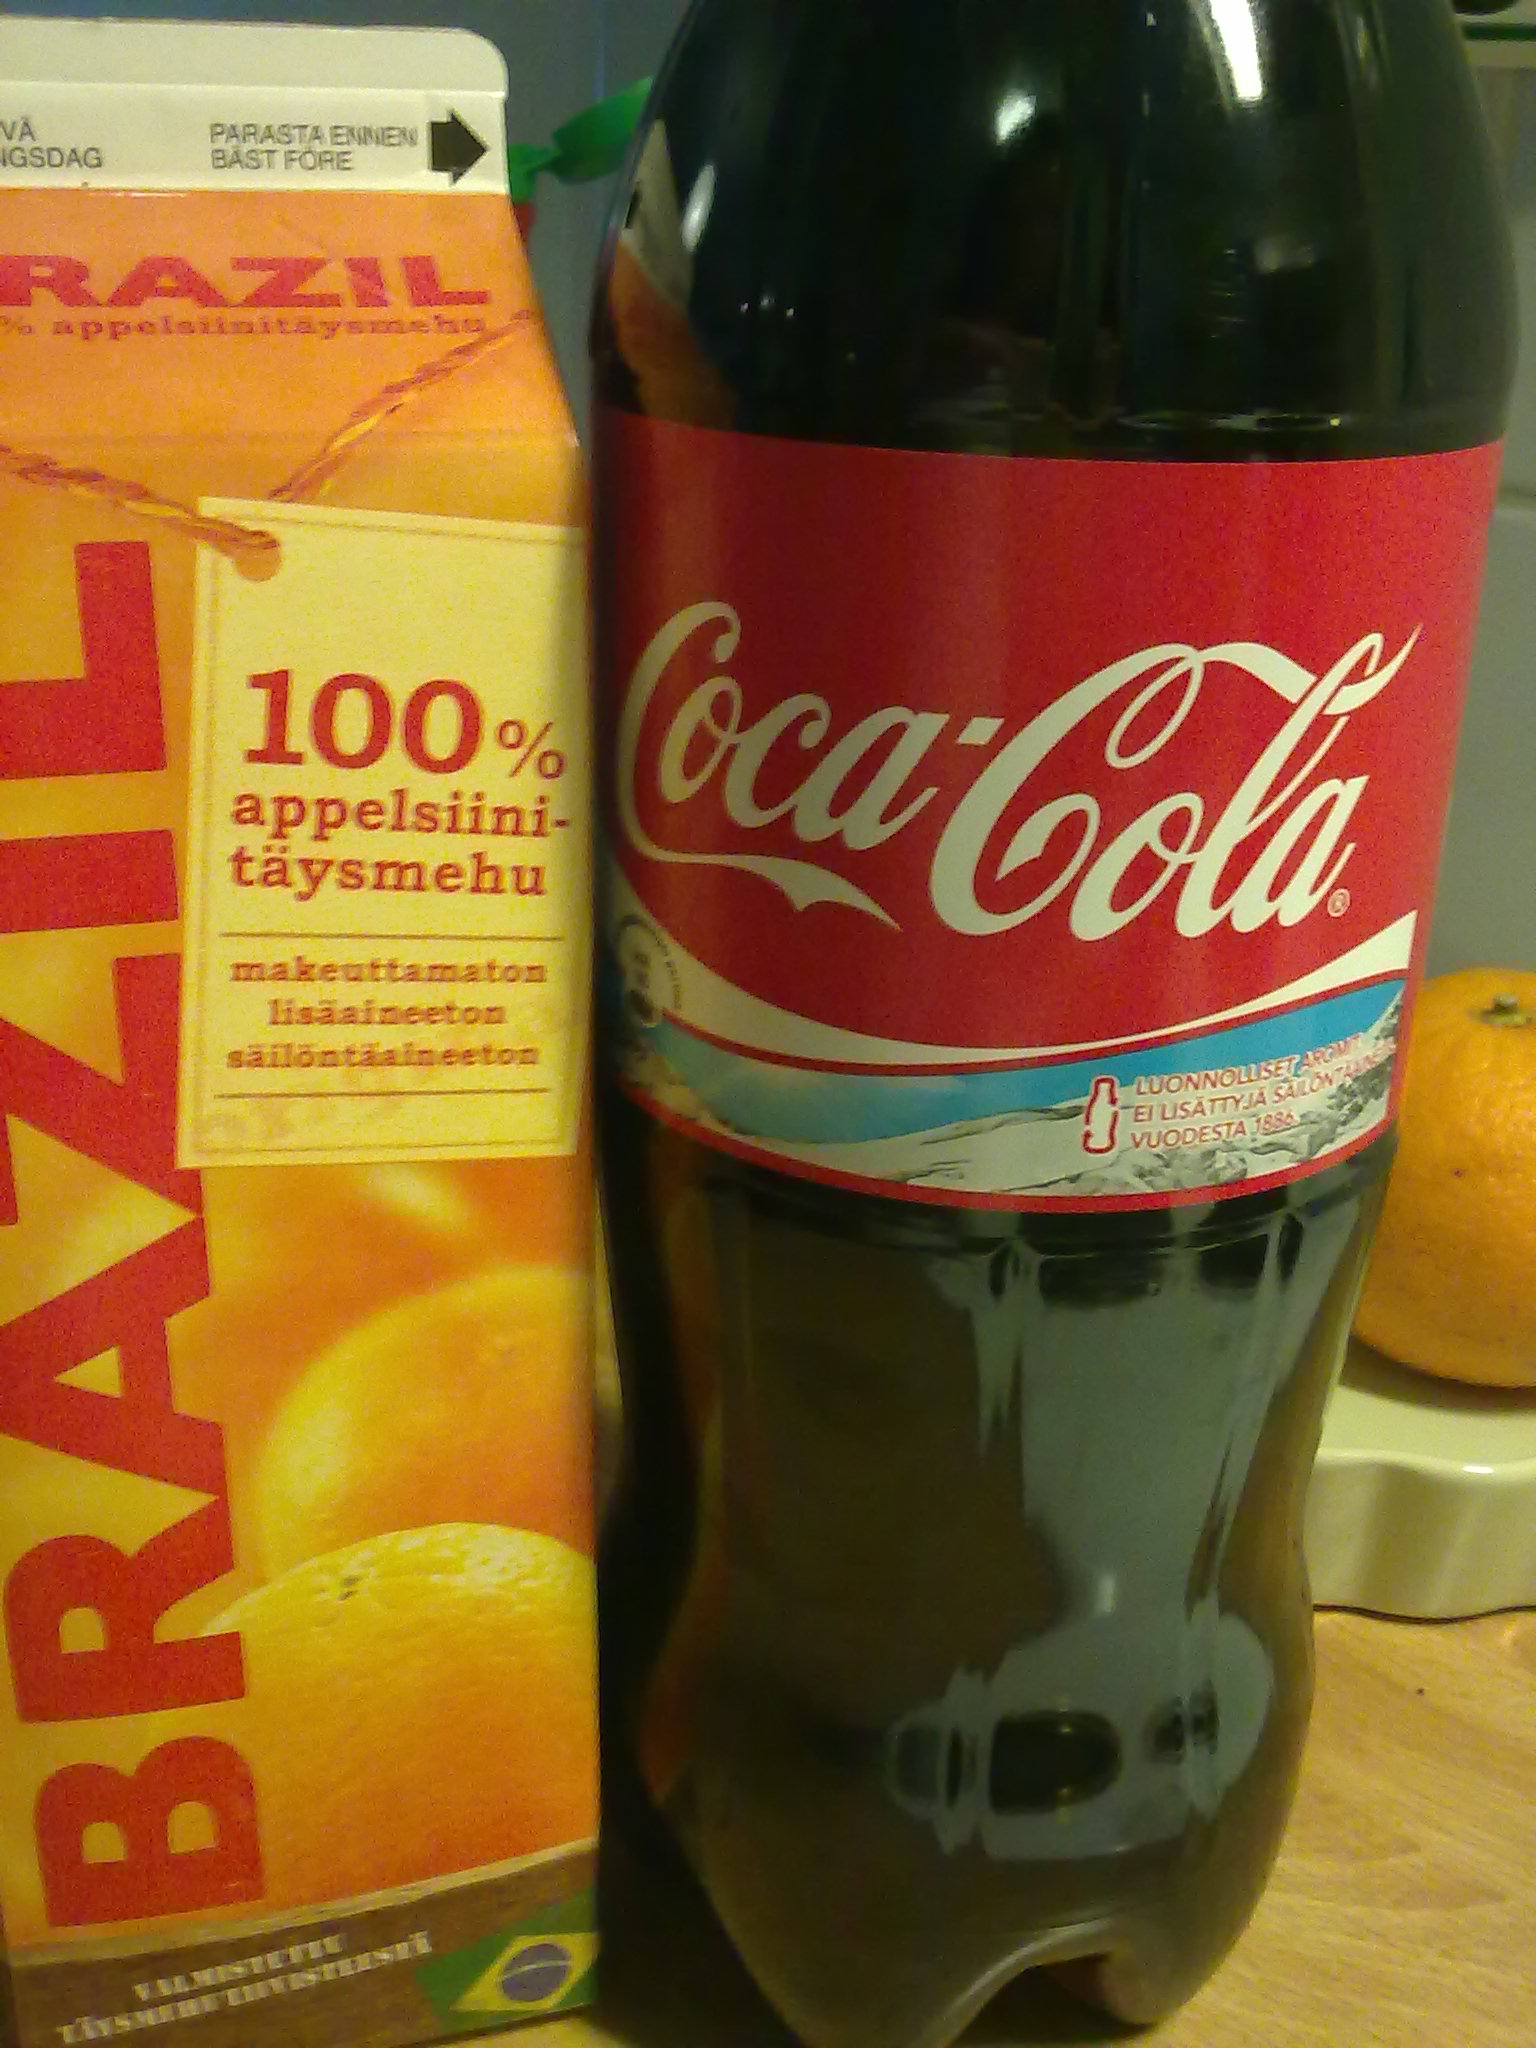 Apelsinjuice vs. Coca-Cola